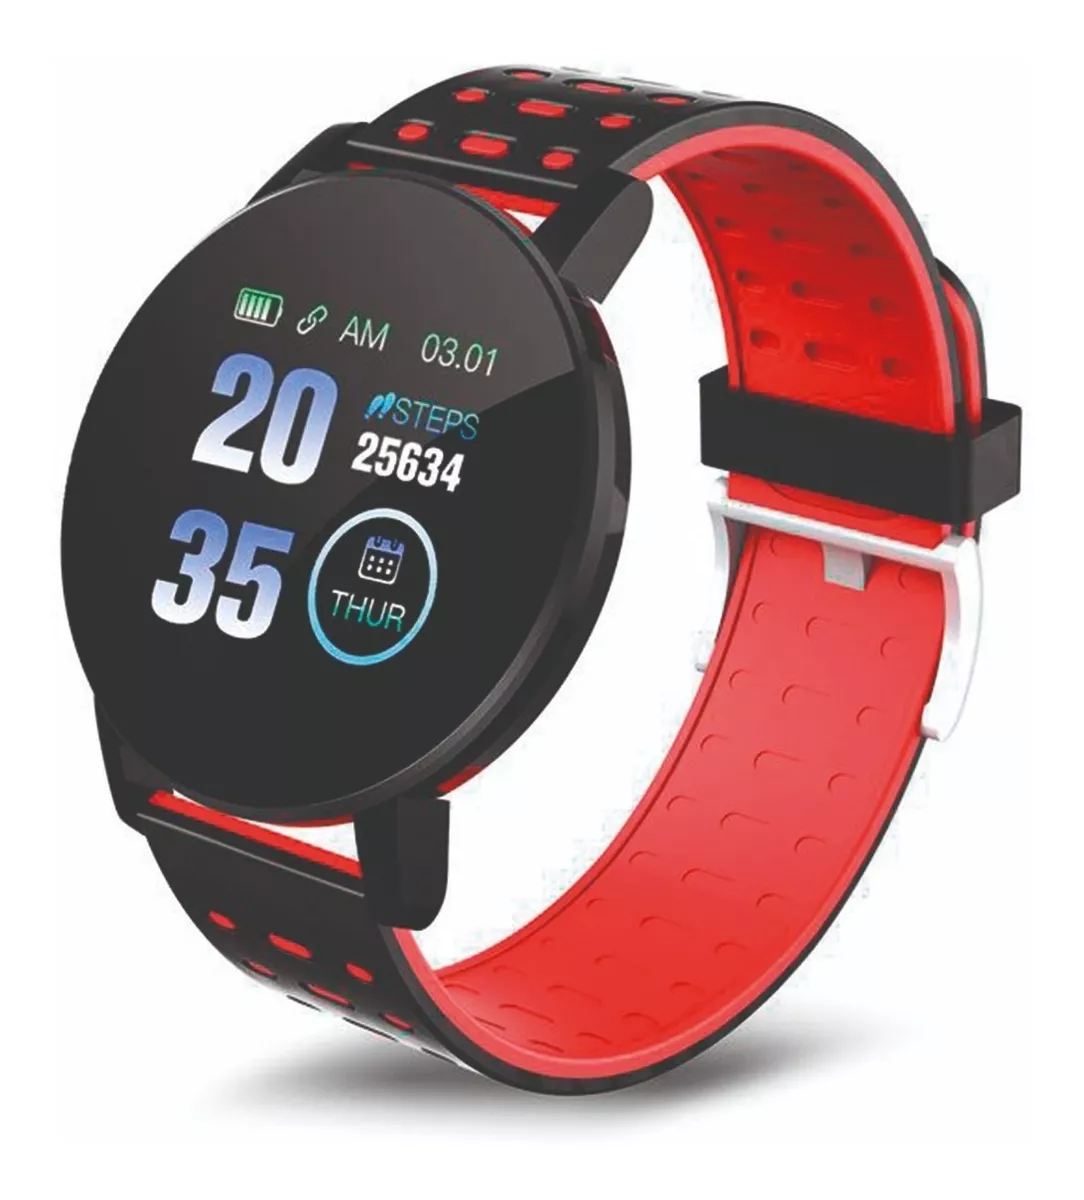 Smartwatch Reloj Fitness Cardiaco Calorias 1 Año De Garantia